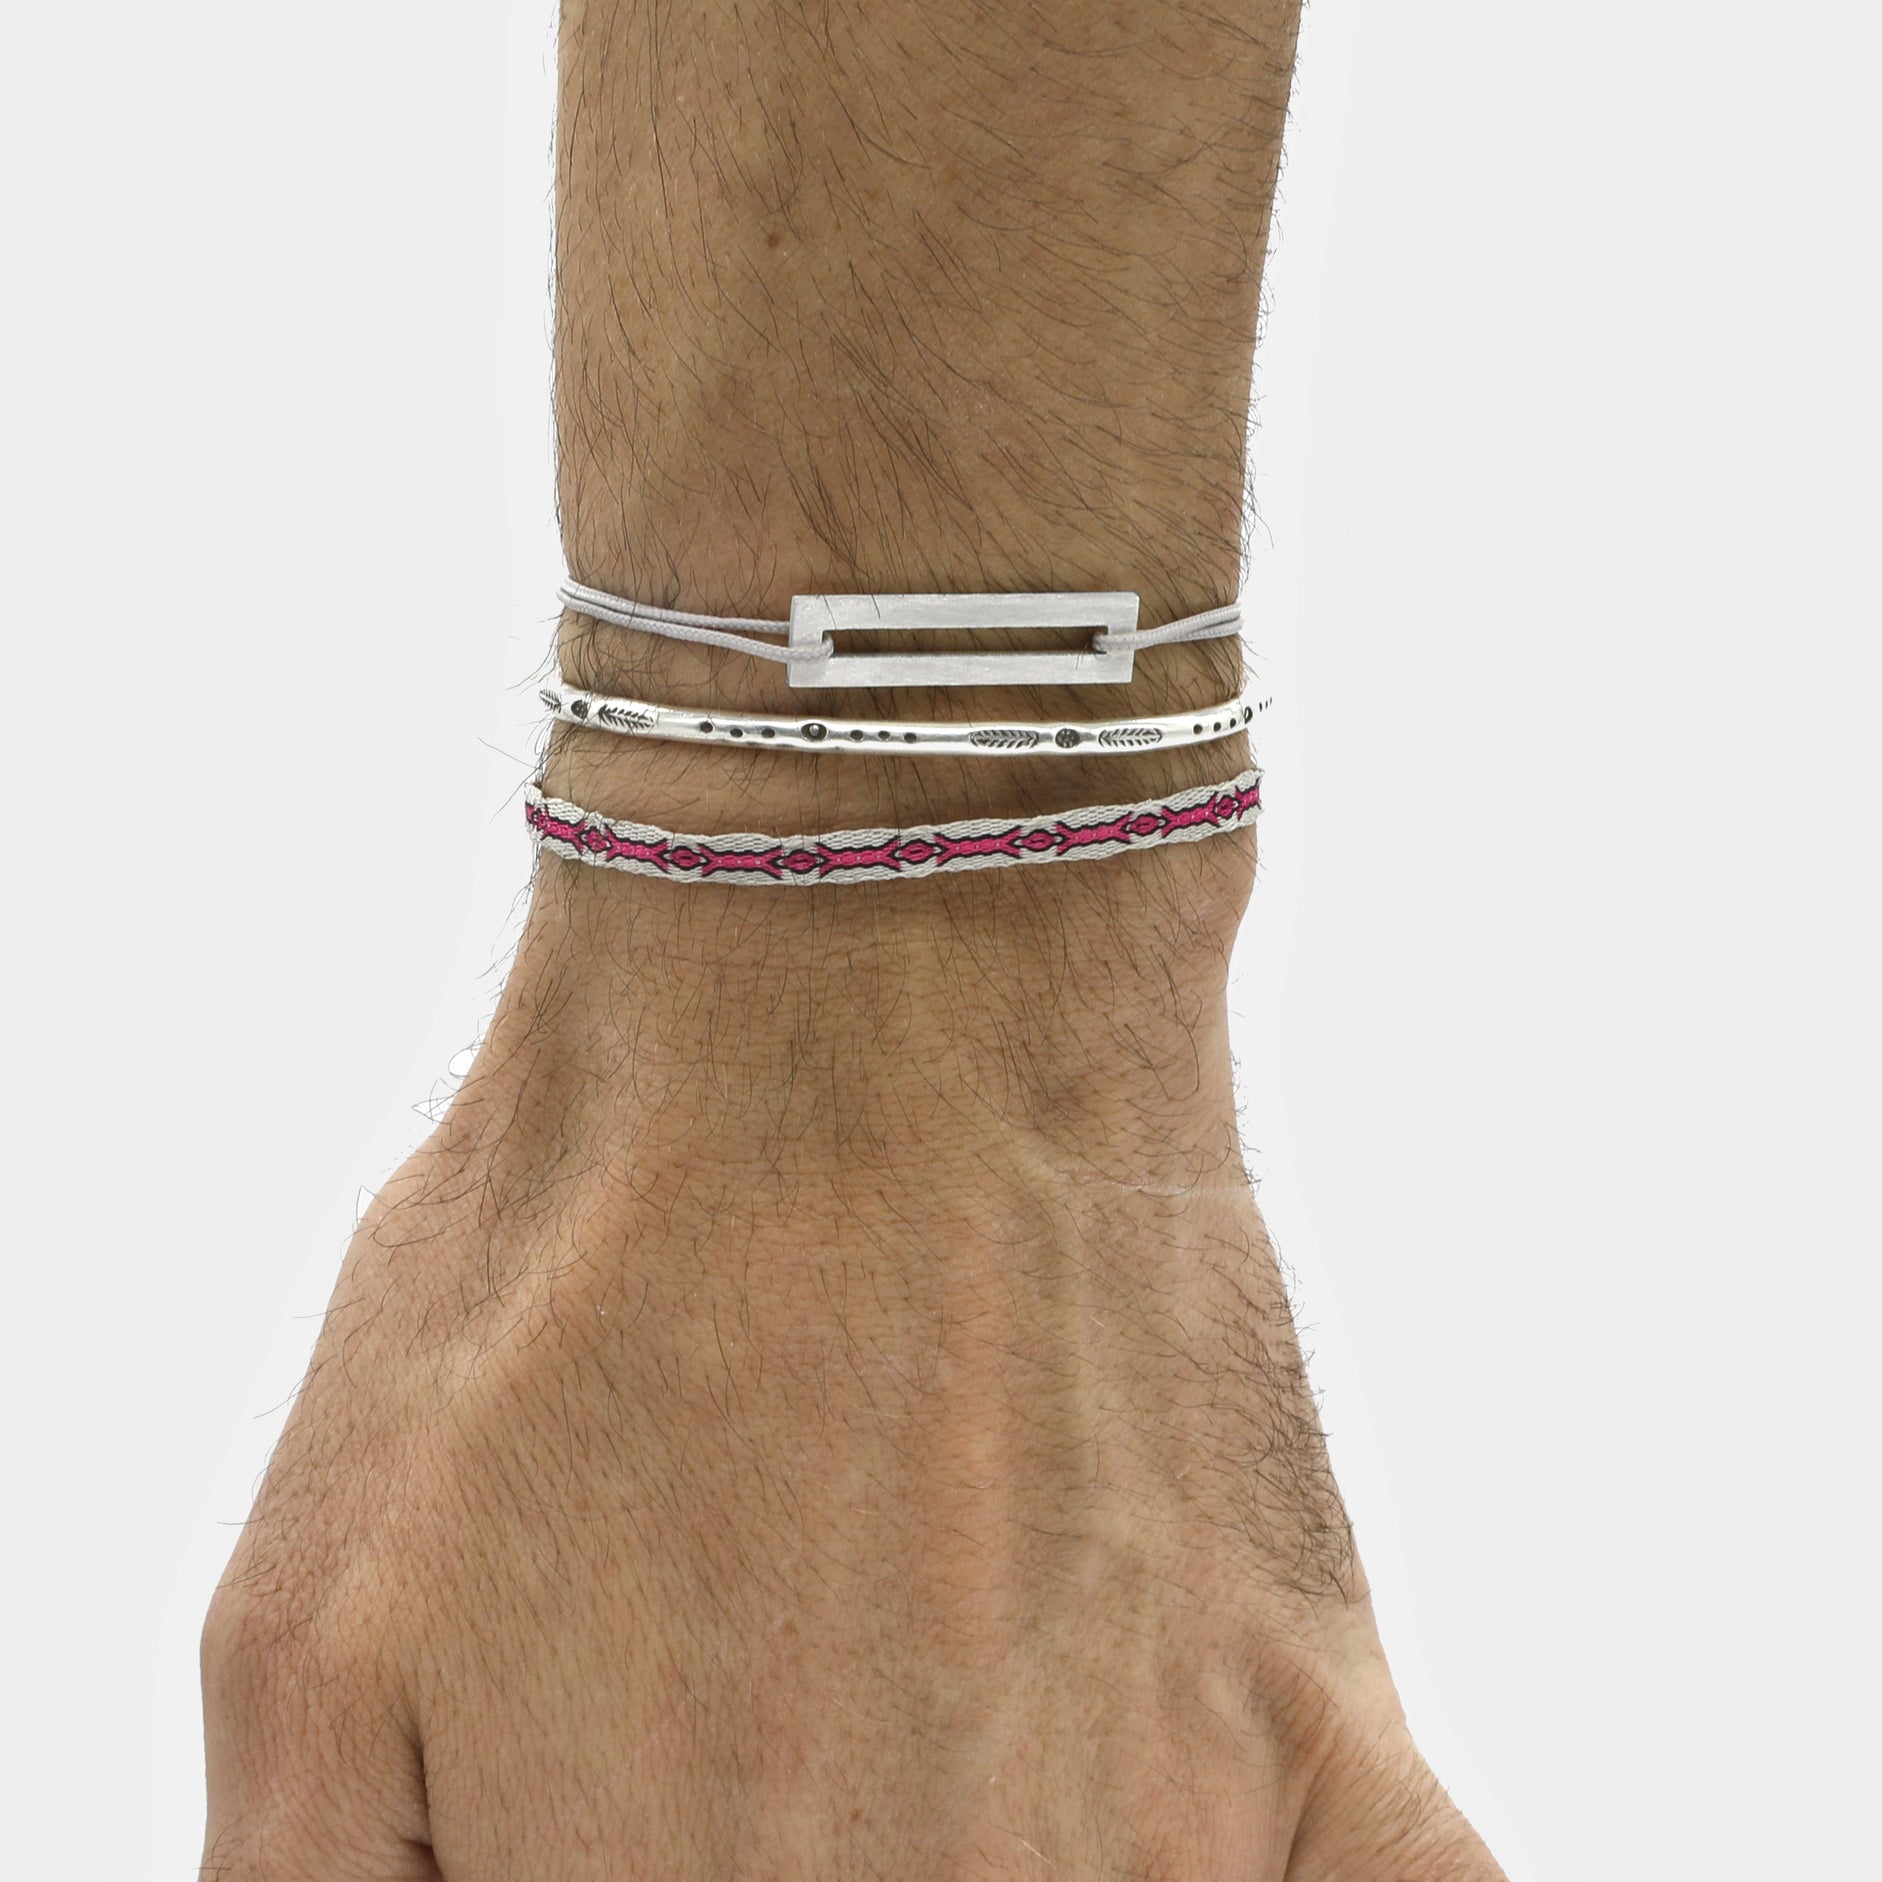 Rope Bracelet With Sterling Silver Bar (Grey)-Jewelry-Kompsós